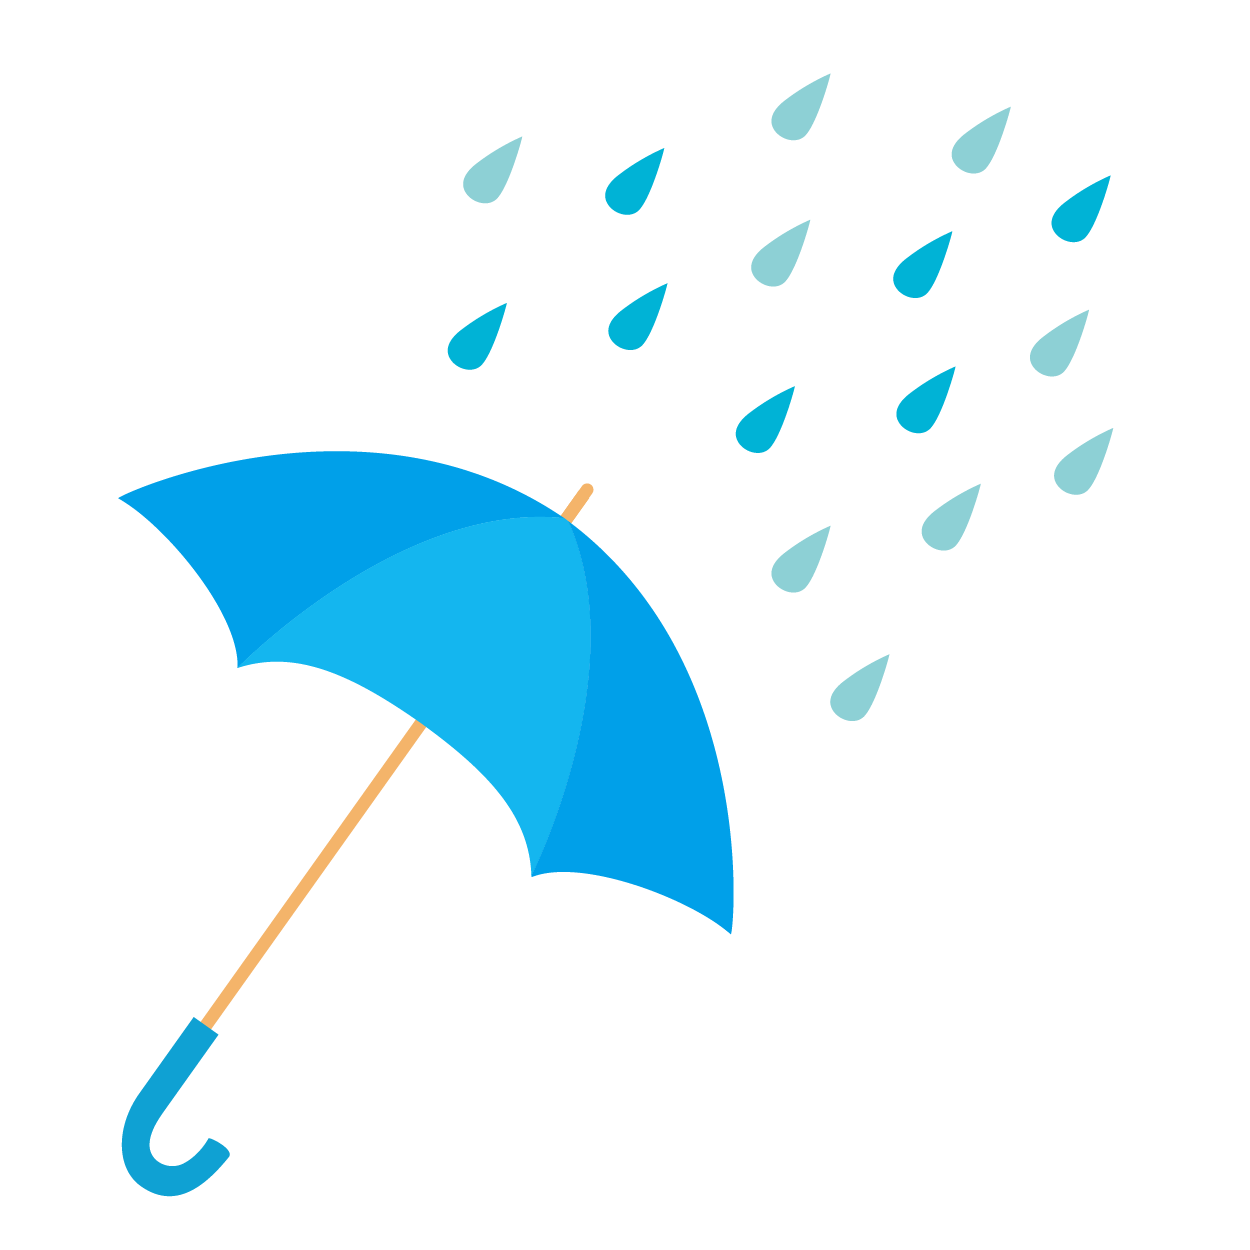 雨と傘のイラスト 商用フリー 無料 のイラスト素材なら イラスト